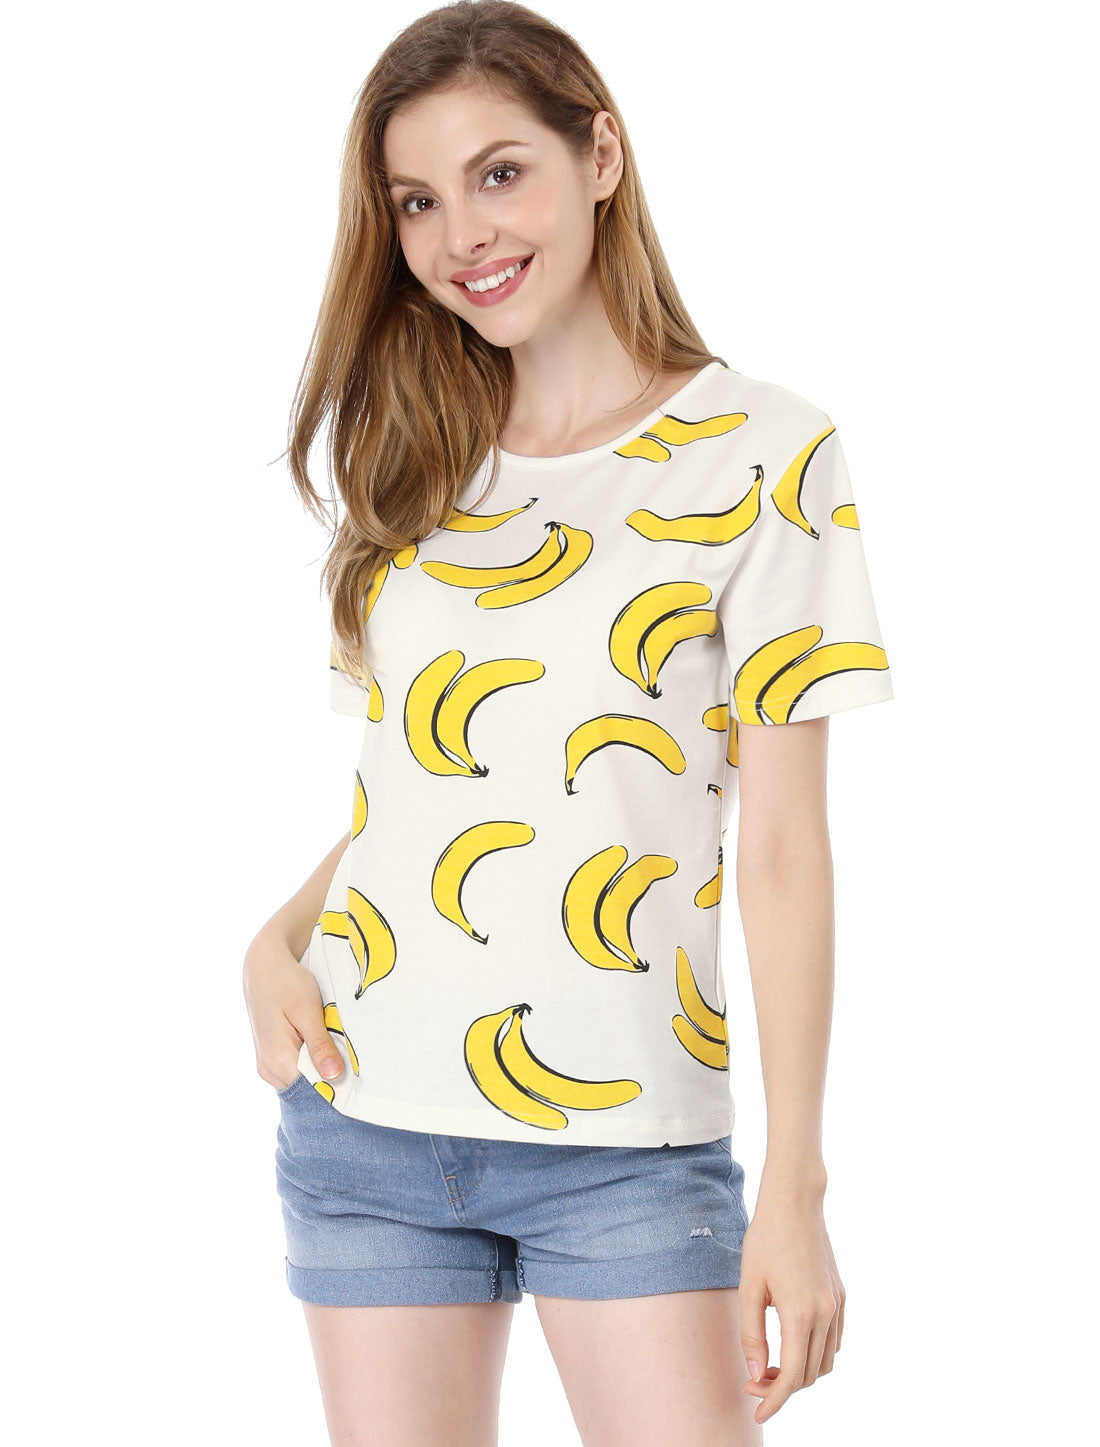 Allegra K Summer Fruit Print Top Round Neck Short Sleeve Cute T-Shirt